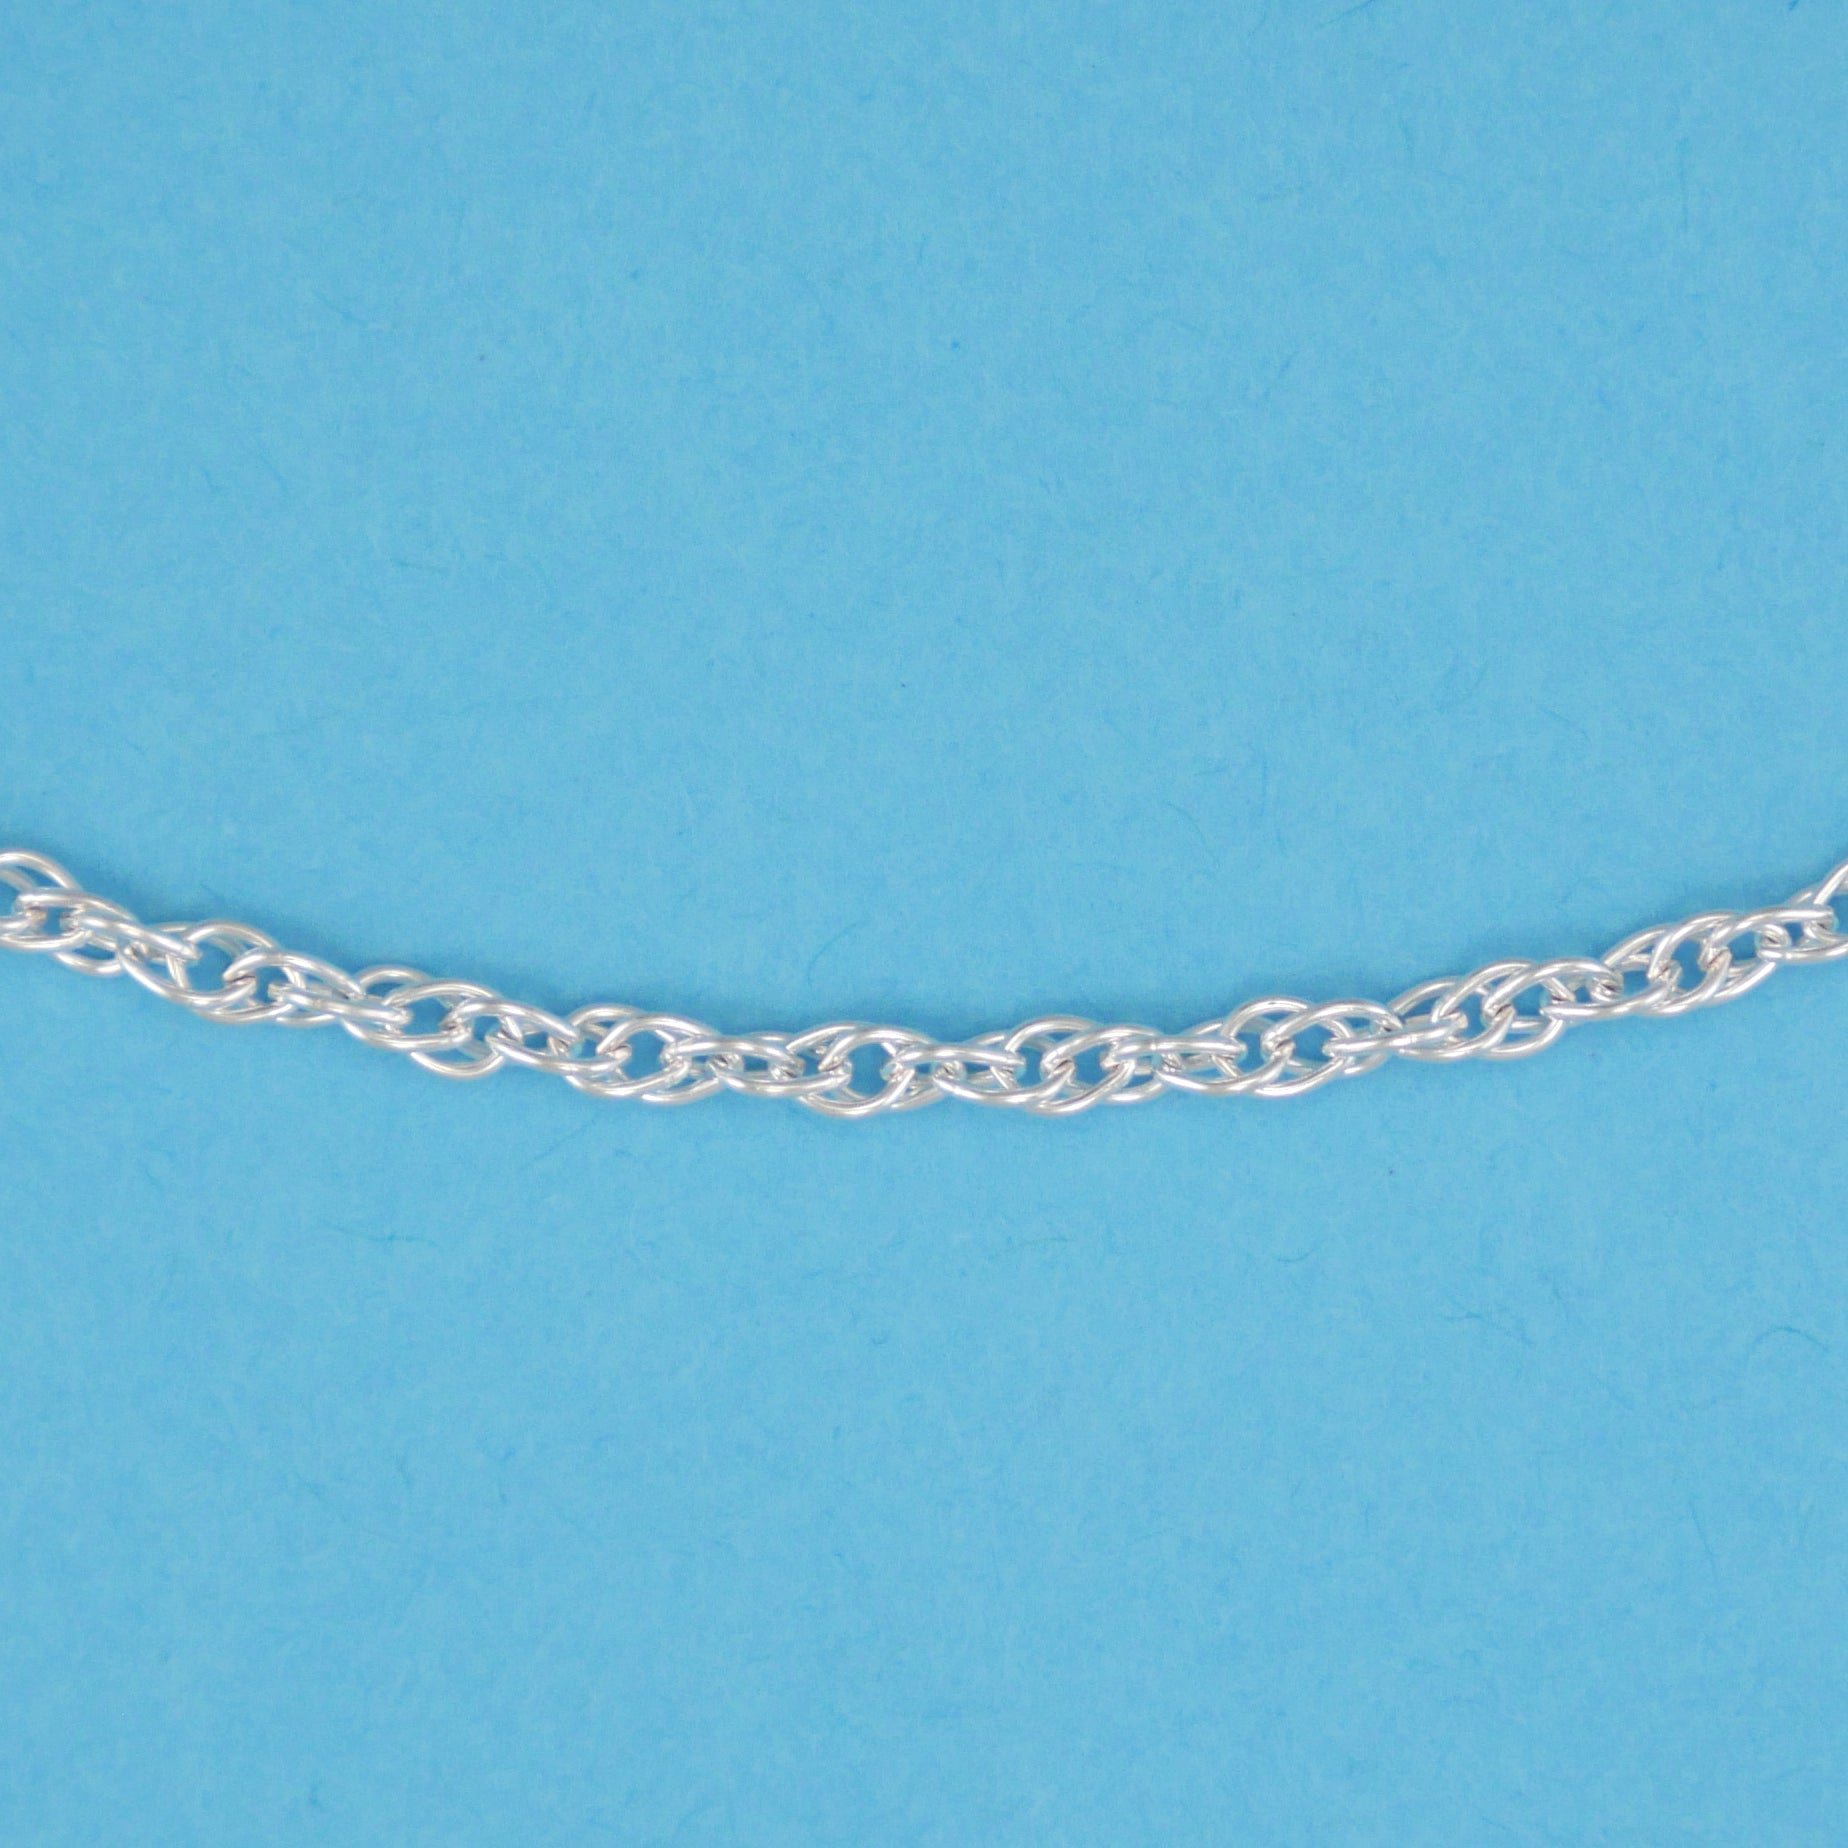 Medium Rope Chain - Charmworks